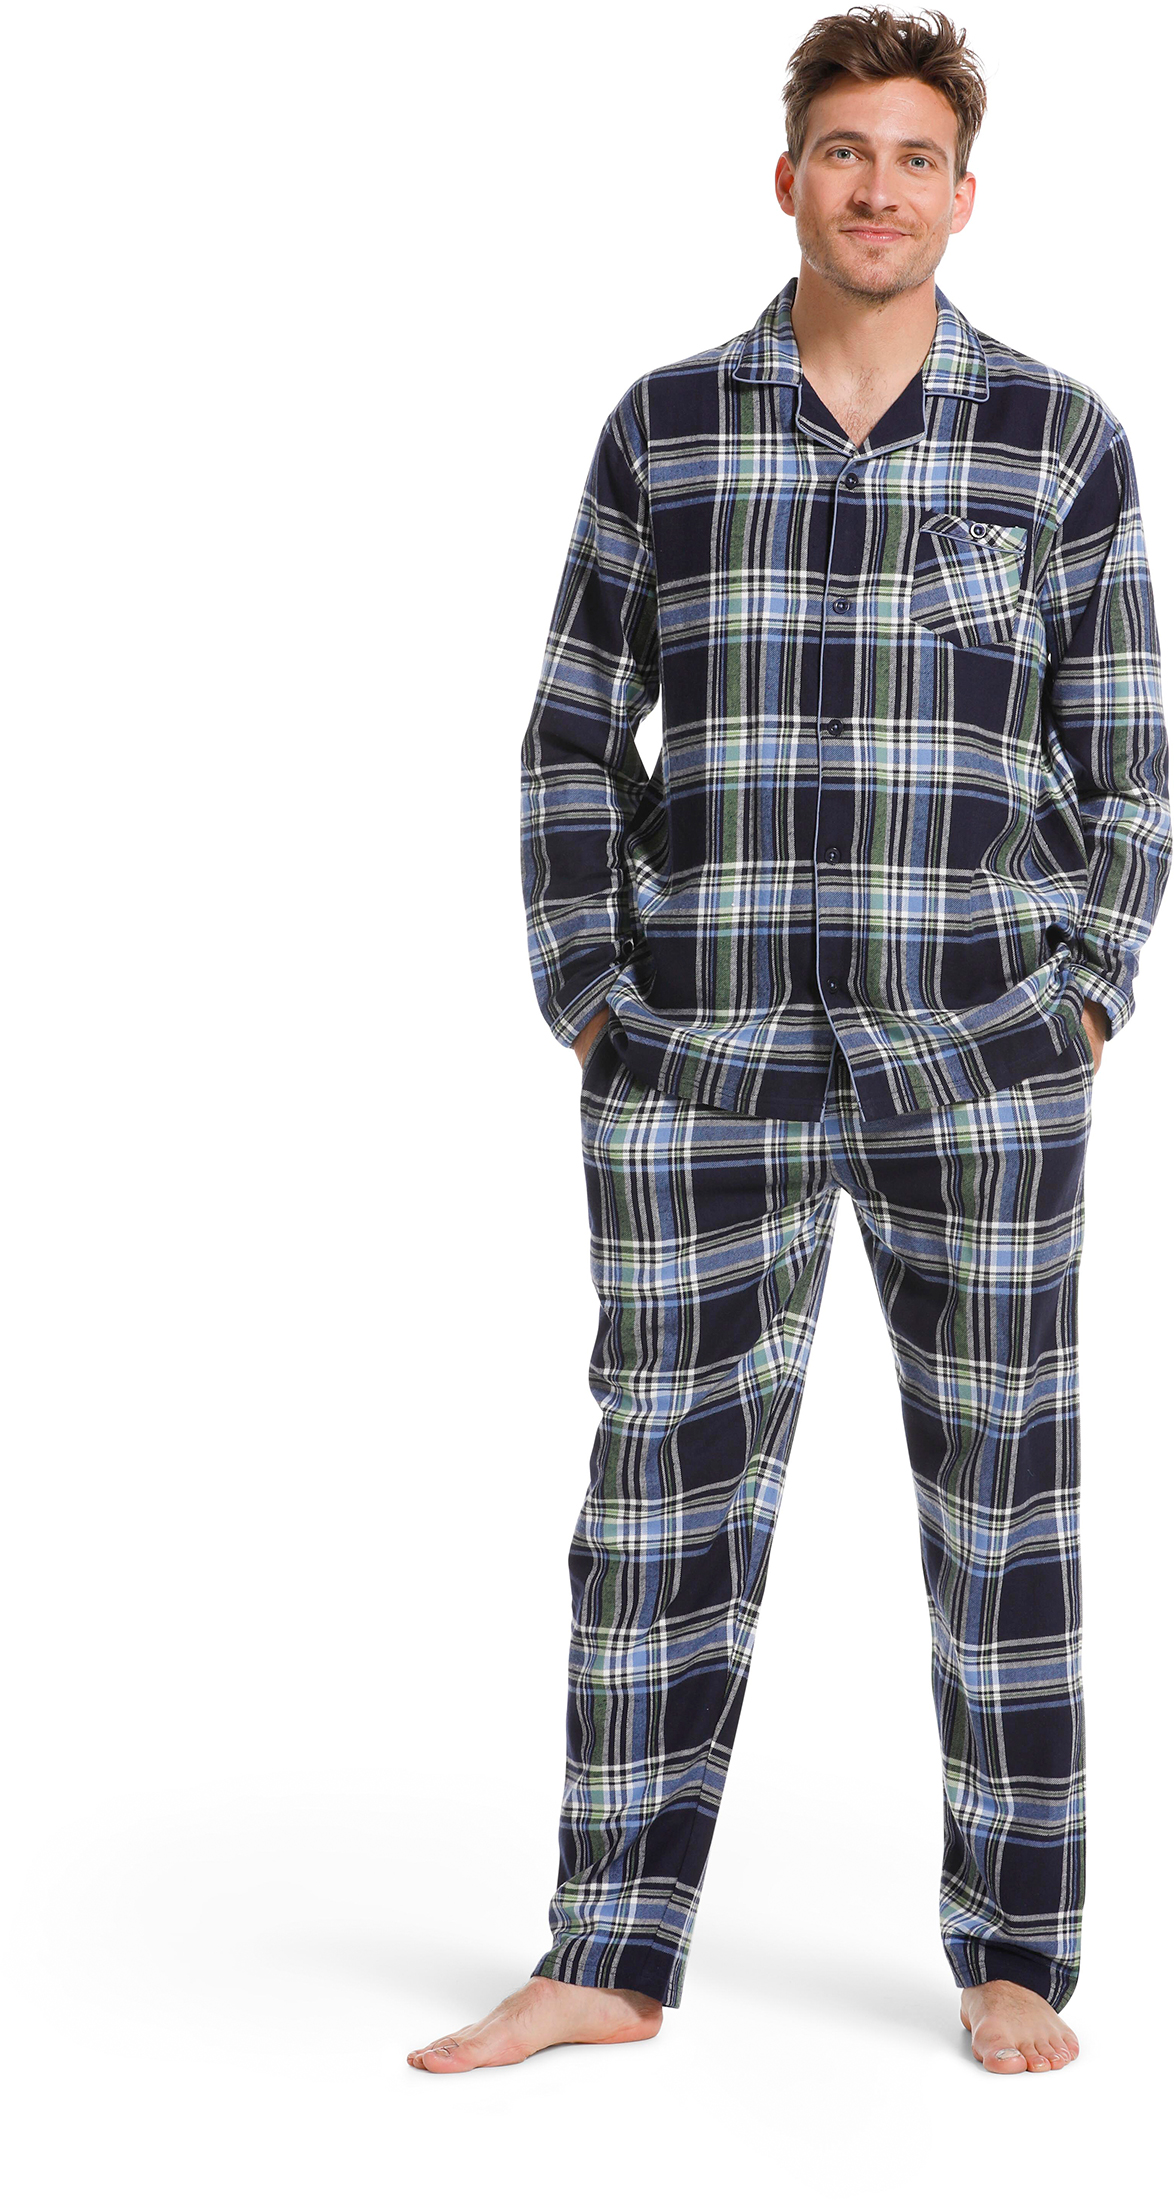 Pastunette heren pyjama flanel 23222-620-6 - Blauw - XL/54